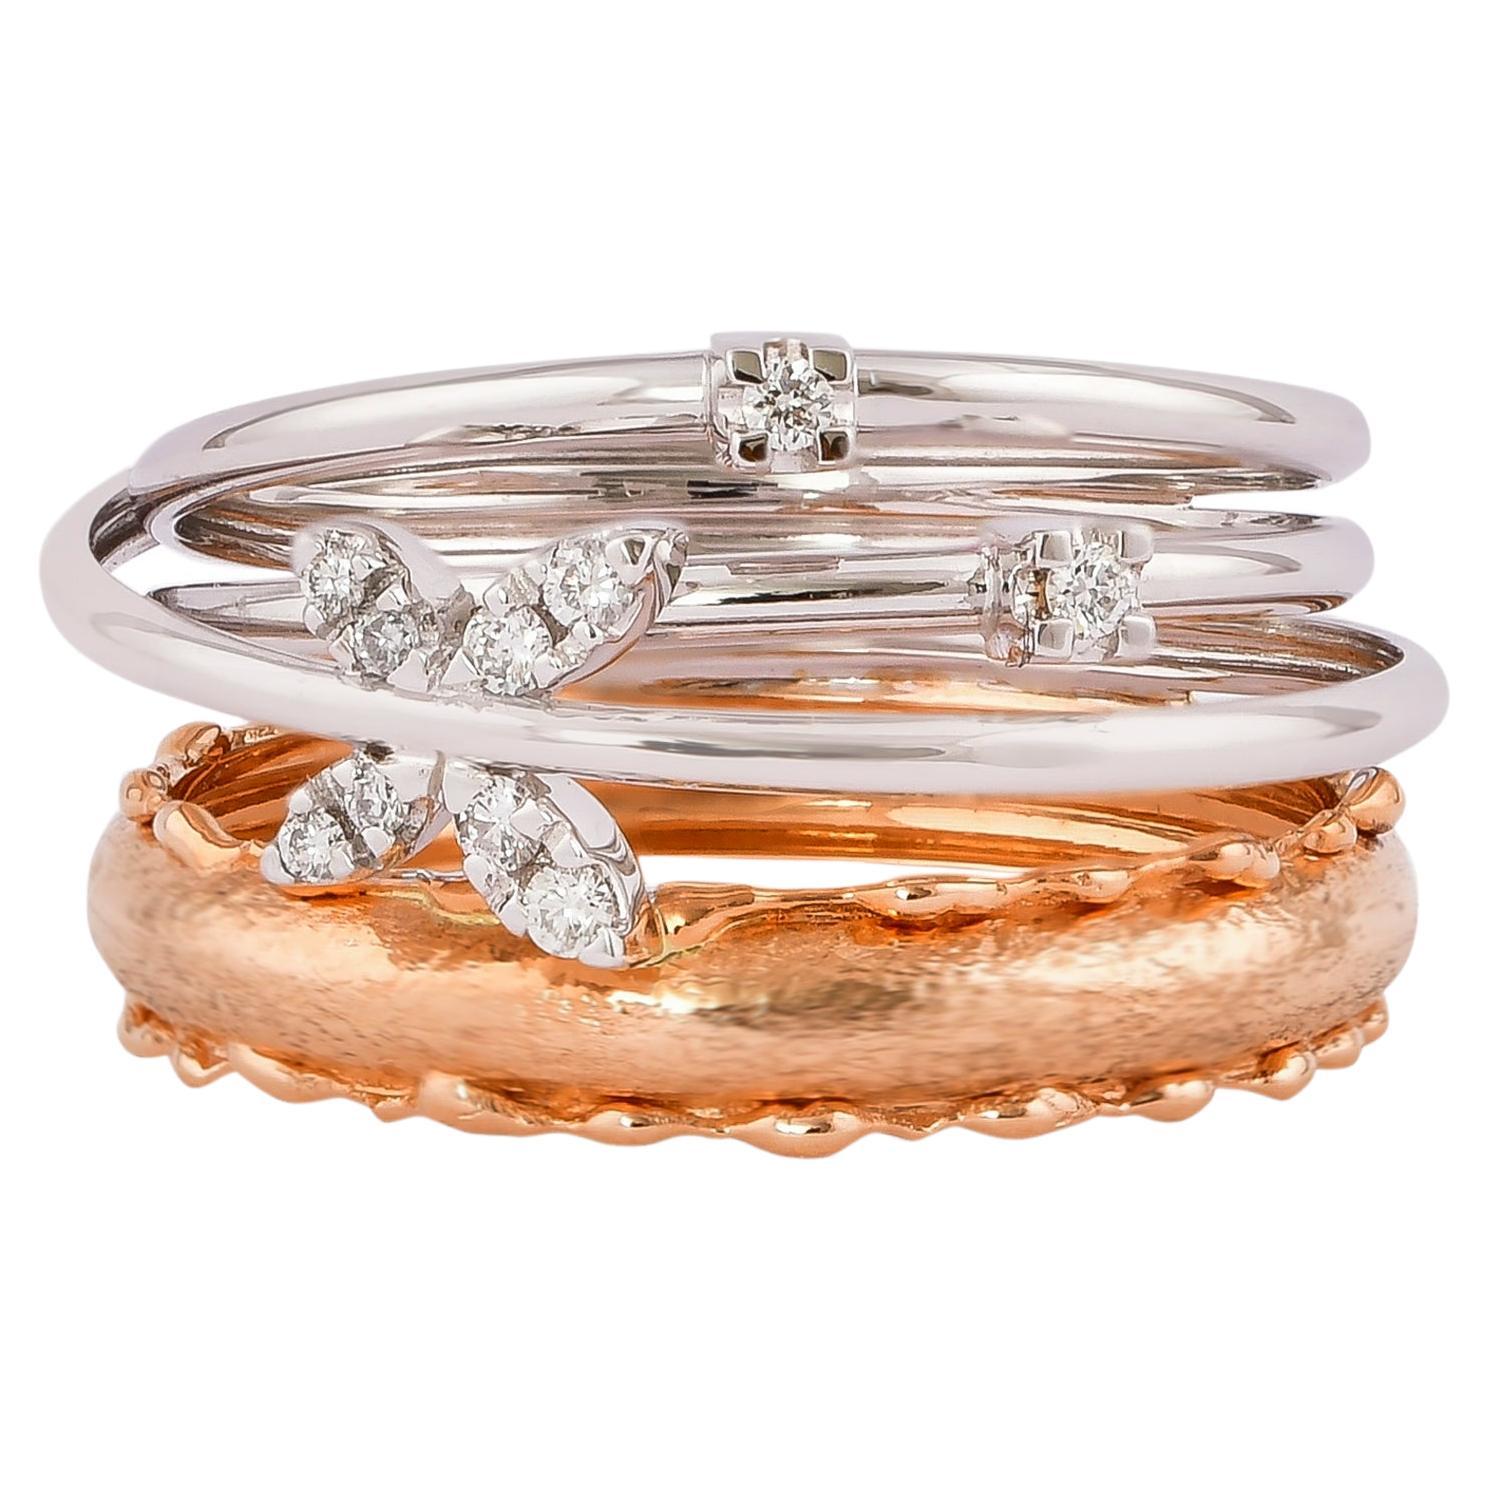 0.116 Carat Diamond Ring in 18 Karat White & Rose Gold